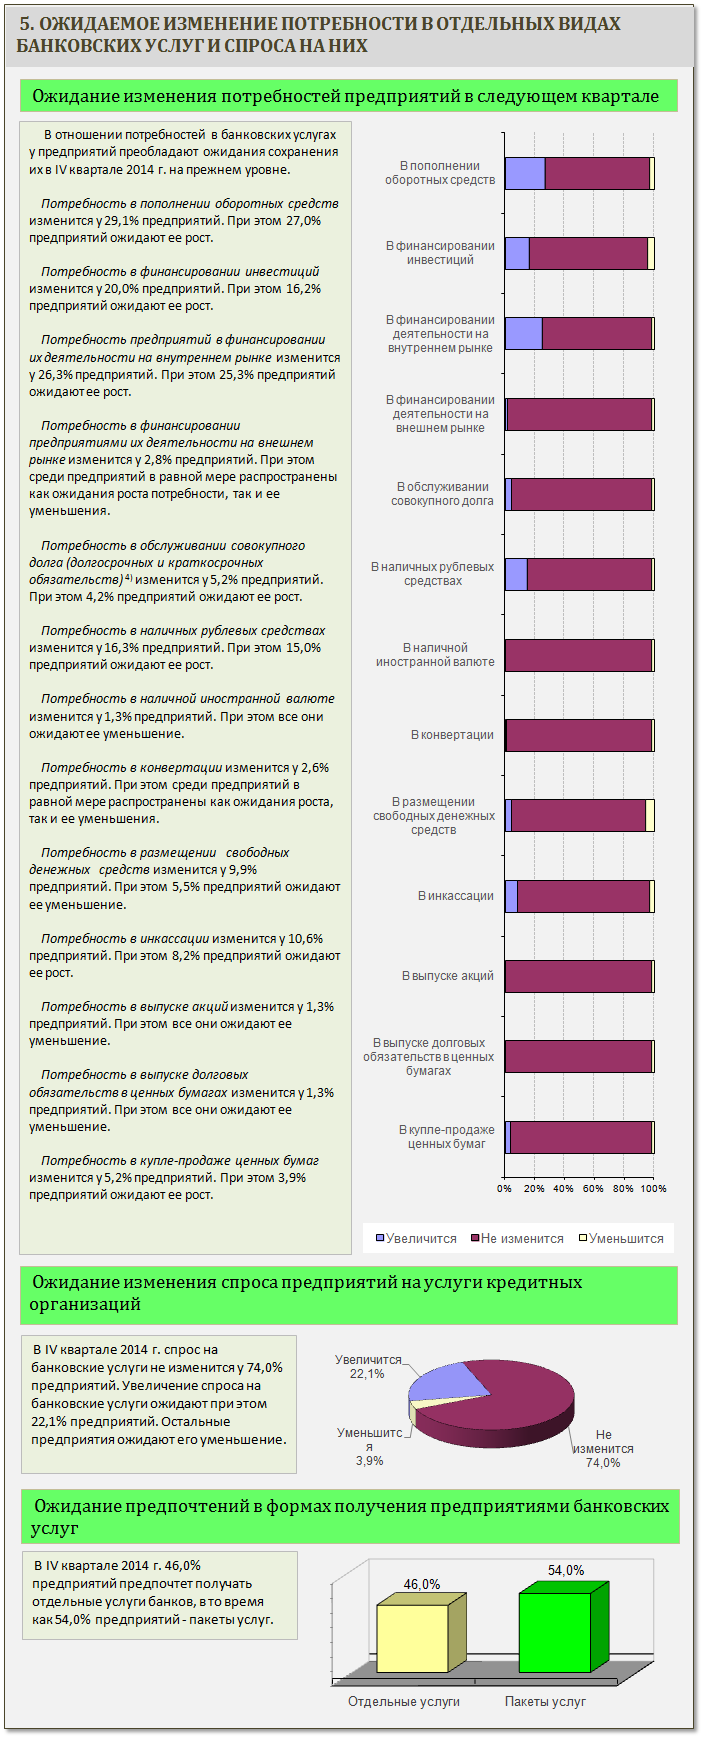 Doc22.ru Главное Управление Центробанка РФ по Алтайскому краю изучило спрос предприятий нефинансового сектора на банковские услуги.